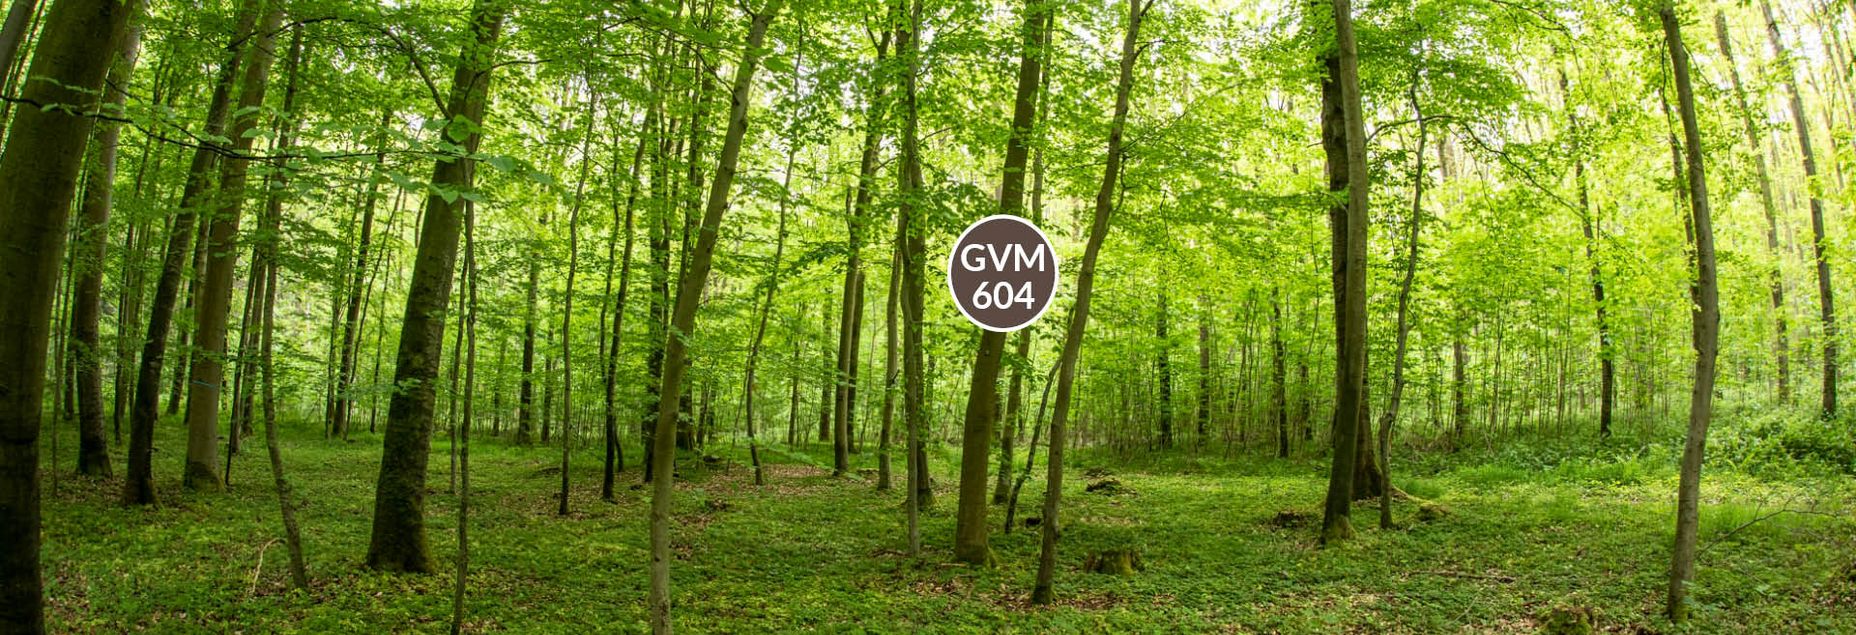 Baum GVM 604 - Fisheyeperspektive